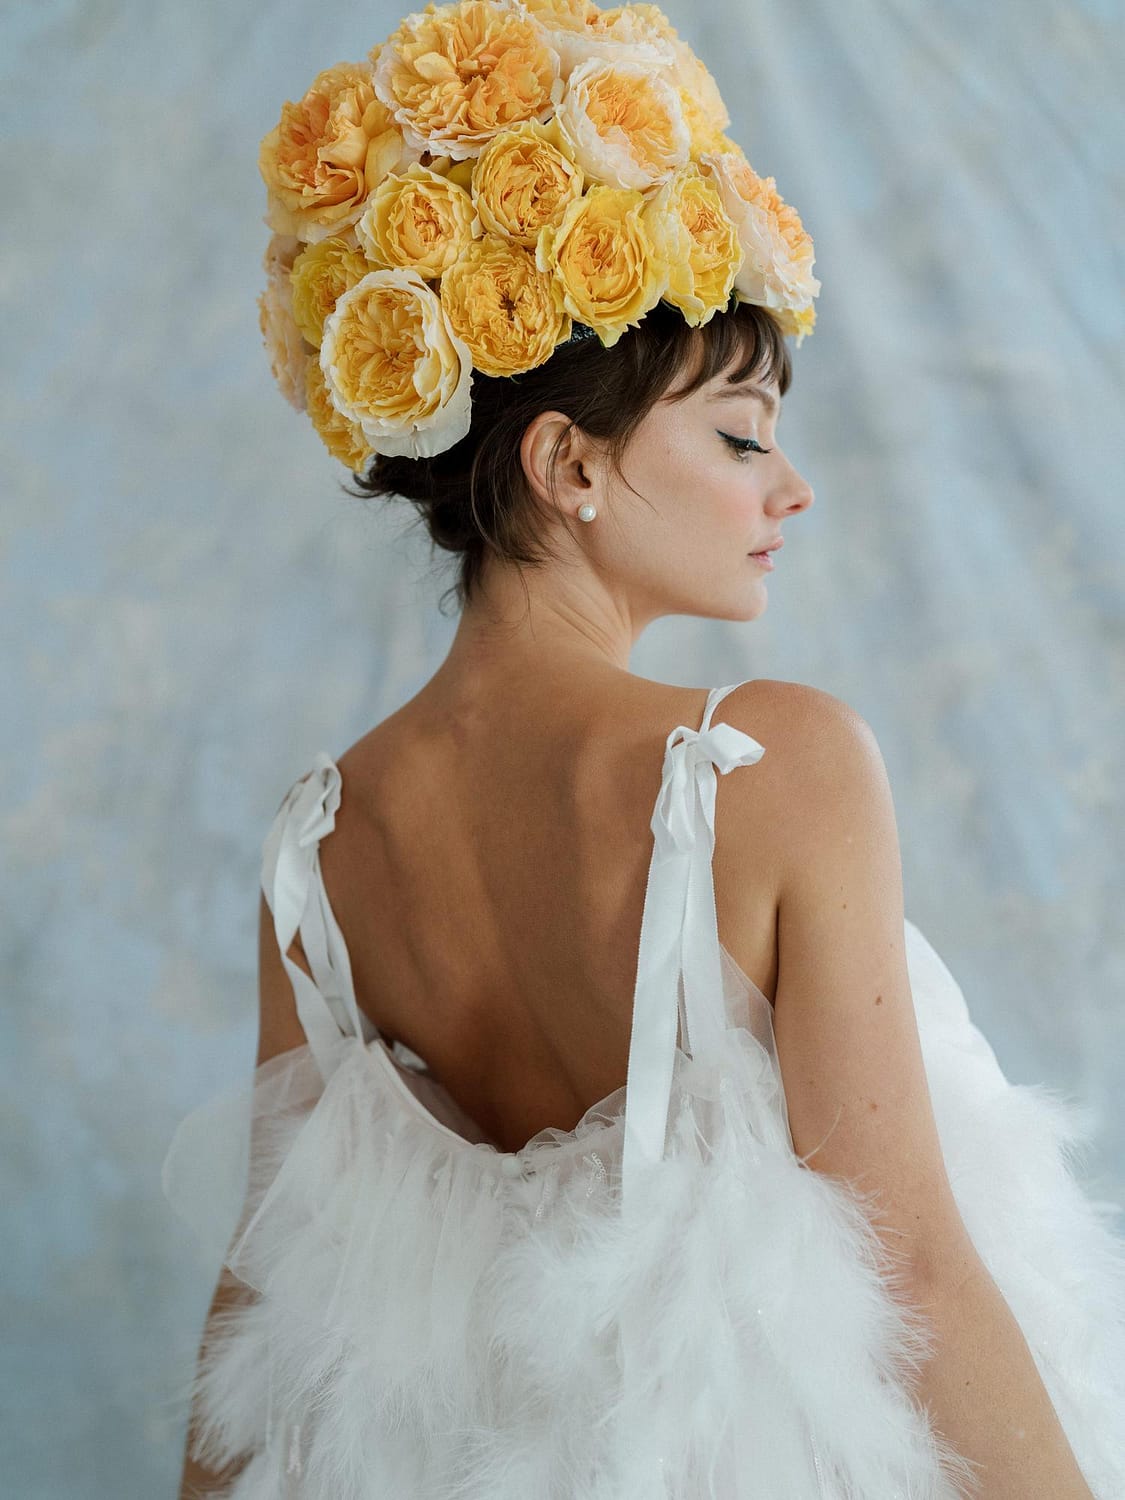 Mode-Editorial mit gelben Hochzeitsblumen